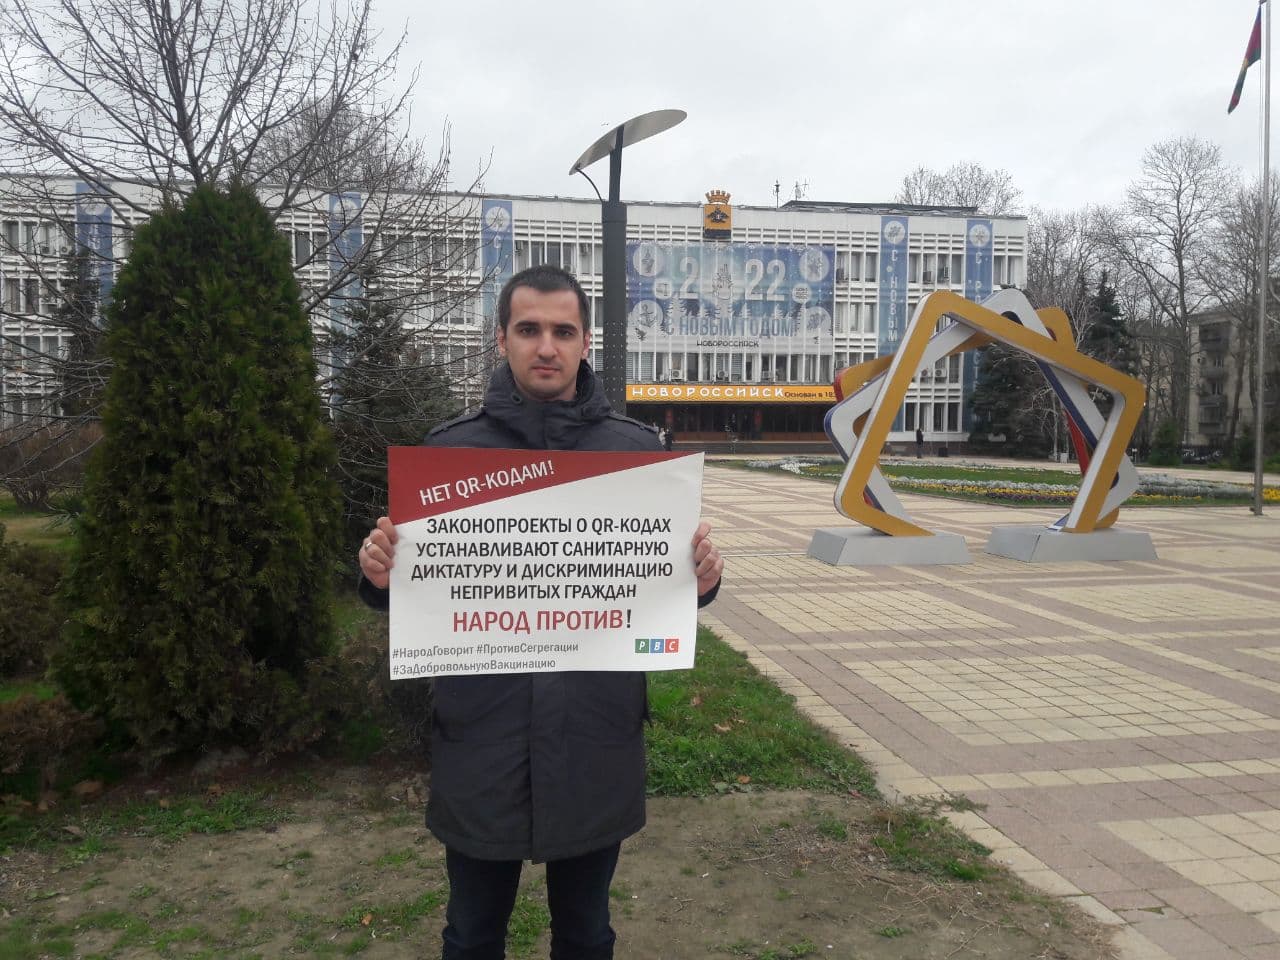 Пикет против законопроекта о QR-кодах в Новороссийске